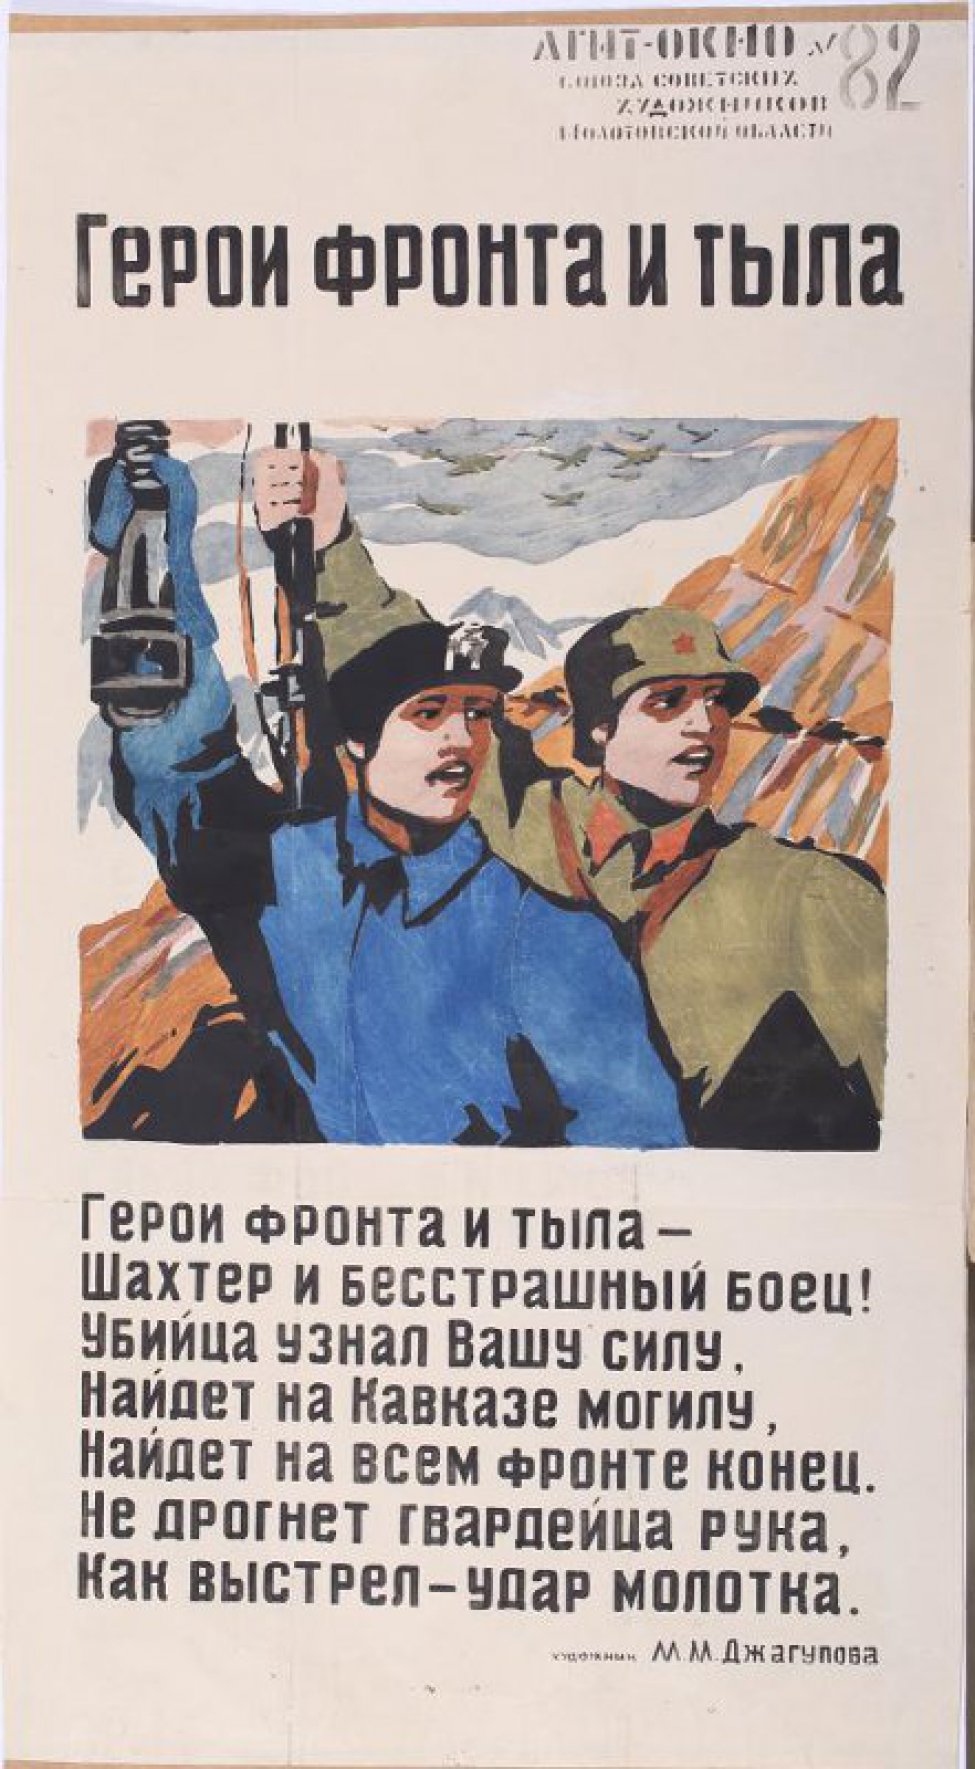 Изображено: шахтер с лампой и боец с винтовкой в руках, текст: "Герои фронта и тыла - шахтер и бесстрашный боец!..."